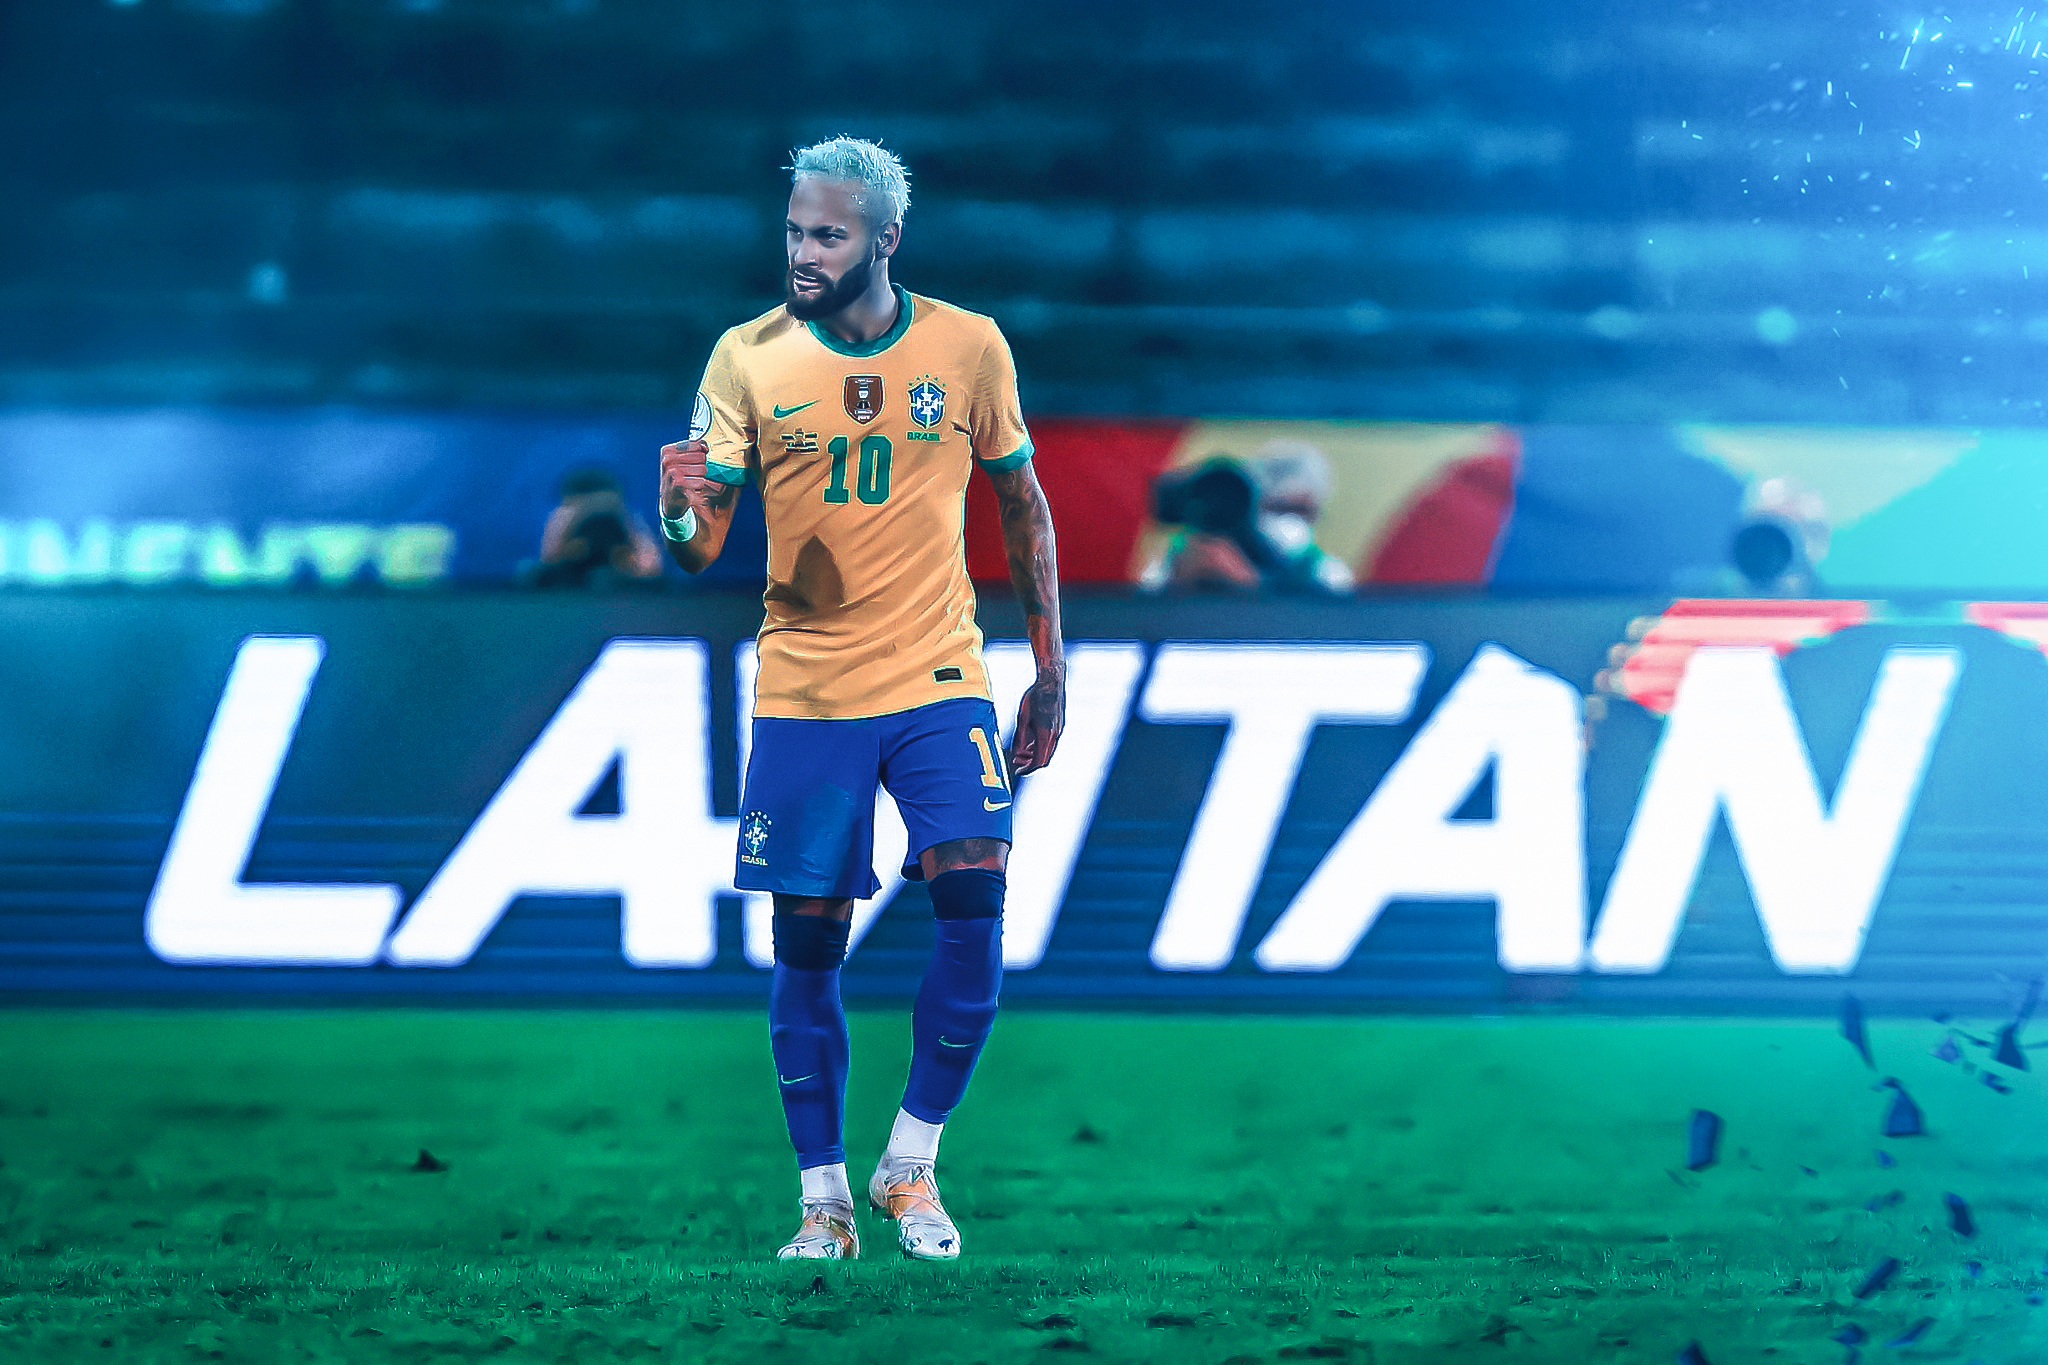 Neymar, jr, HD phone wallpaper | Peakpx